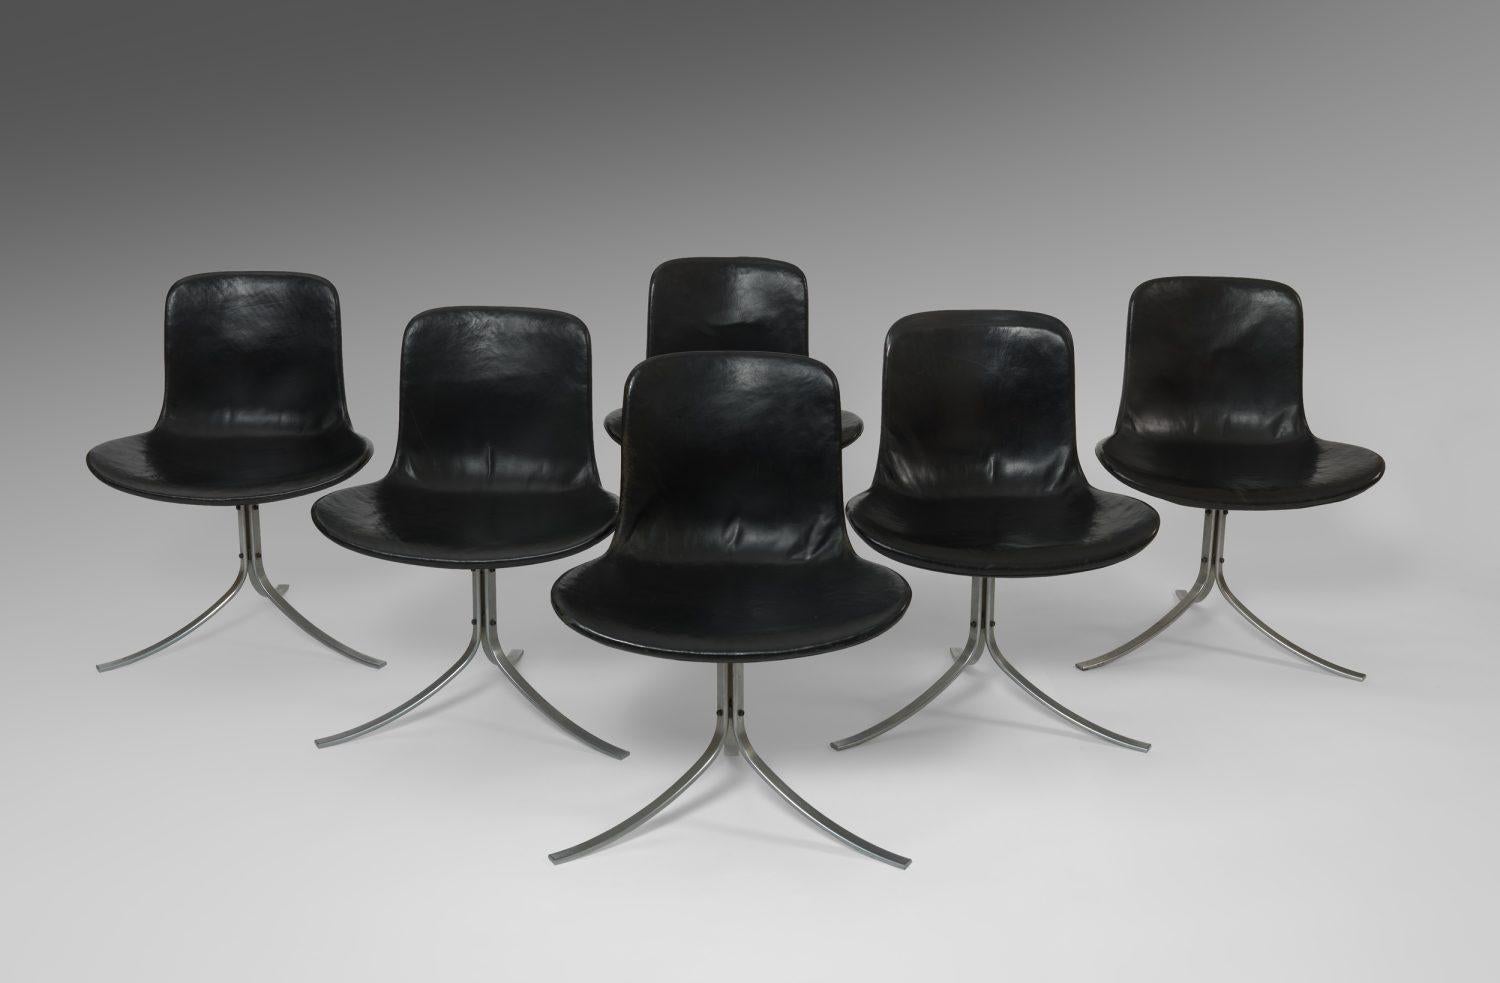 Ensemble de six chaises de salle à manger modèle PK9 conçues par Poul Kjaerholm pour E Kold Christensen,
Danemark, années 1960.

Cuir et acier.

Estampillé.

L'association des chaises de salle à manger avec la table de salle à manger PK54 de Poul